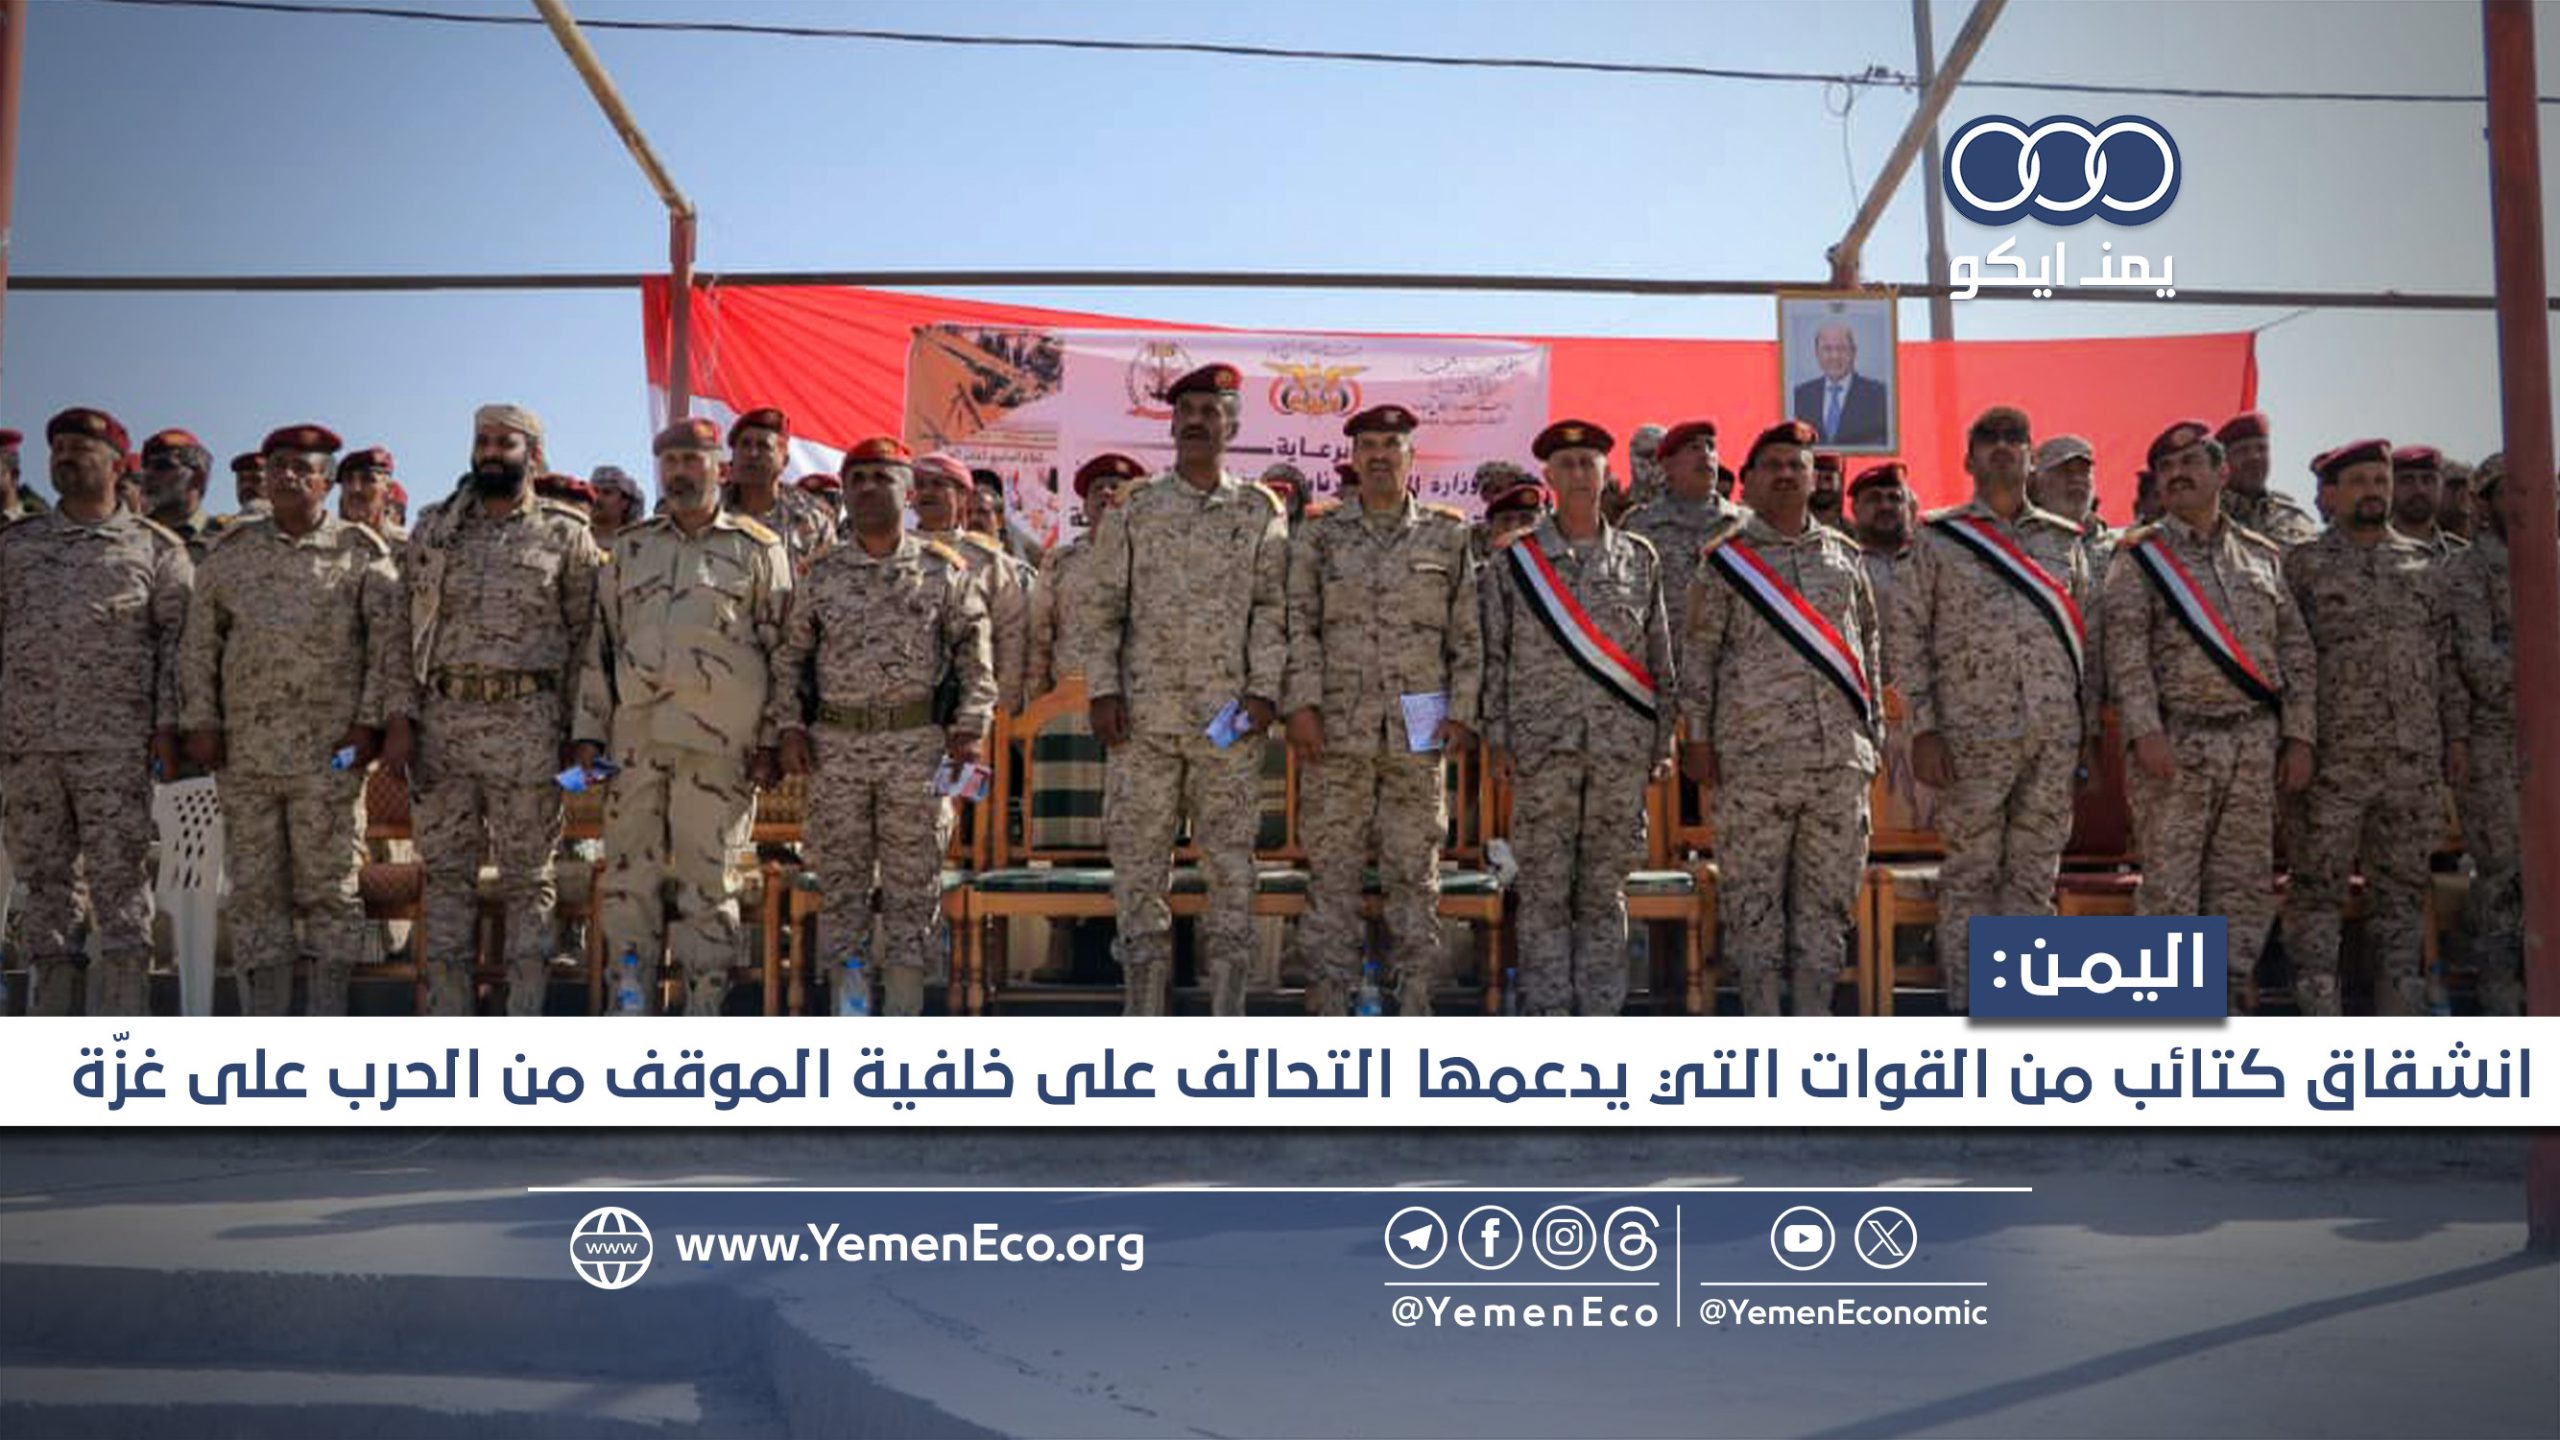 انشقاق كتائب في مأرب والساحل الغربي وانضمامها لقوات صنعاء